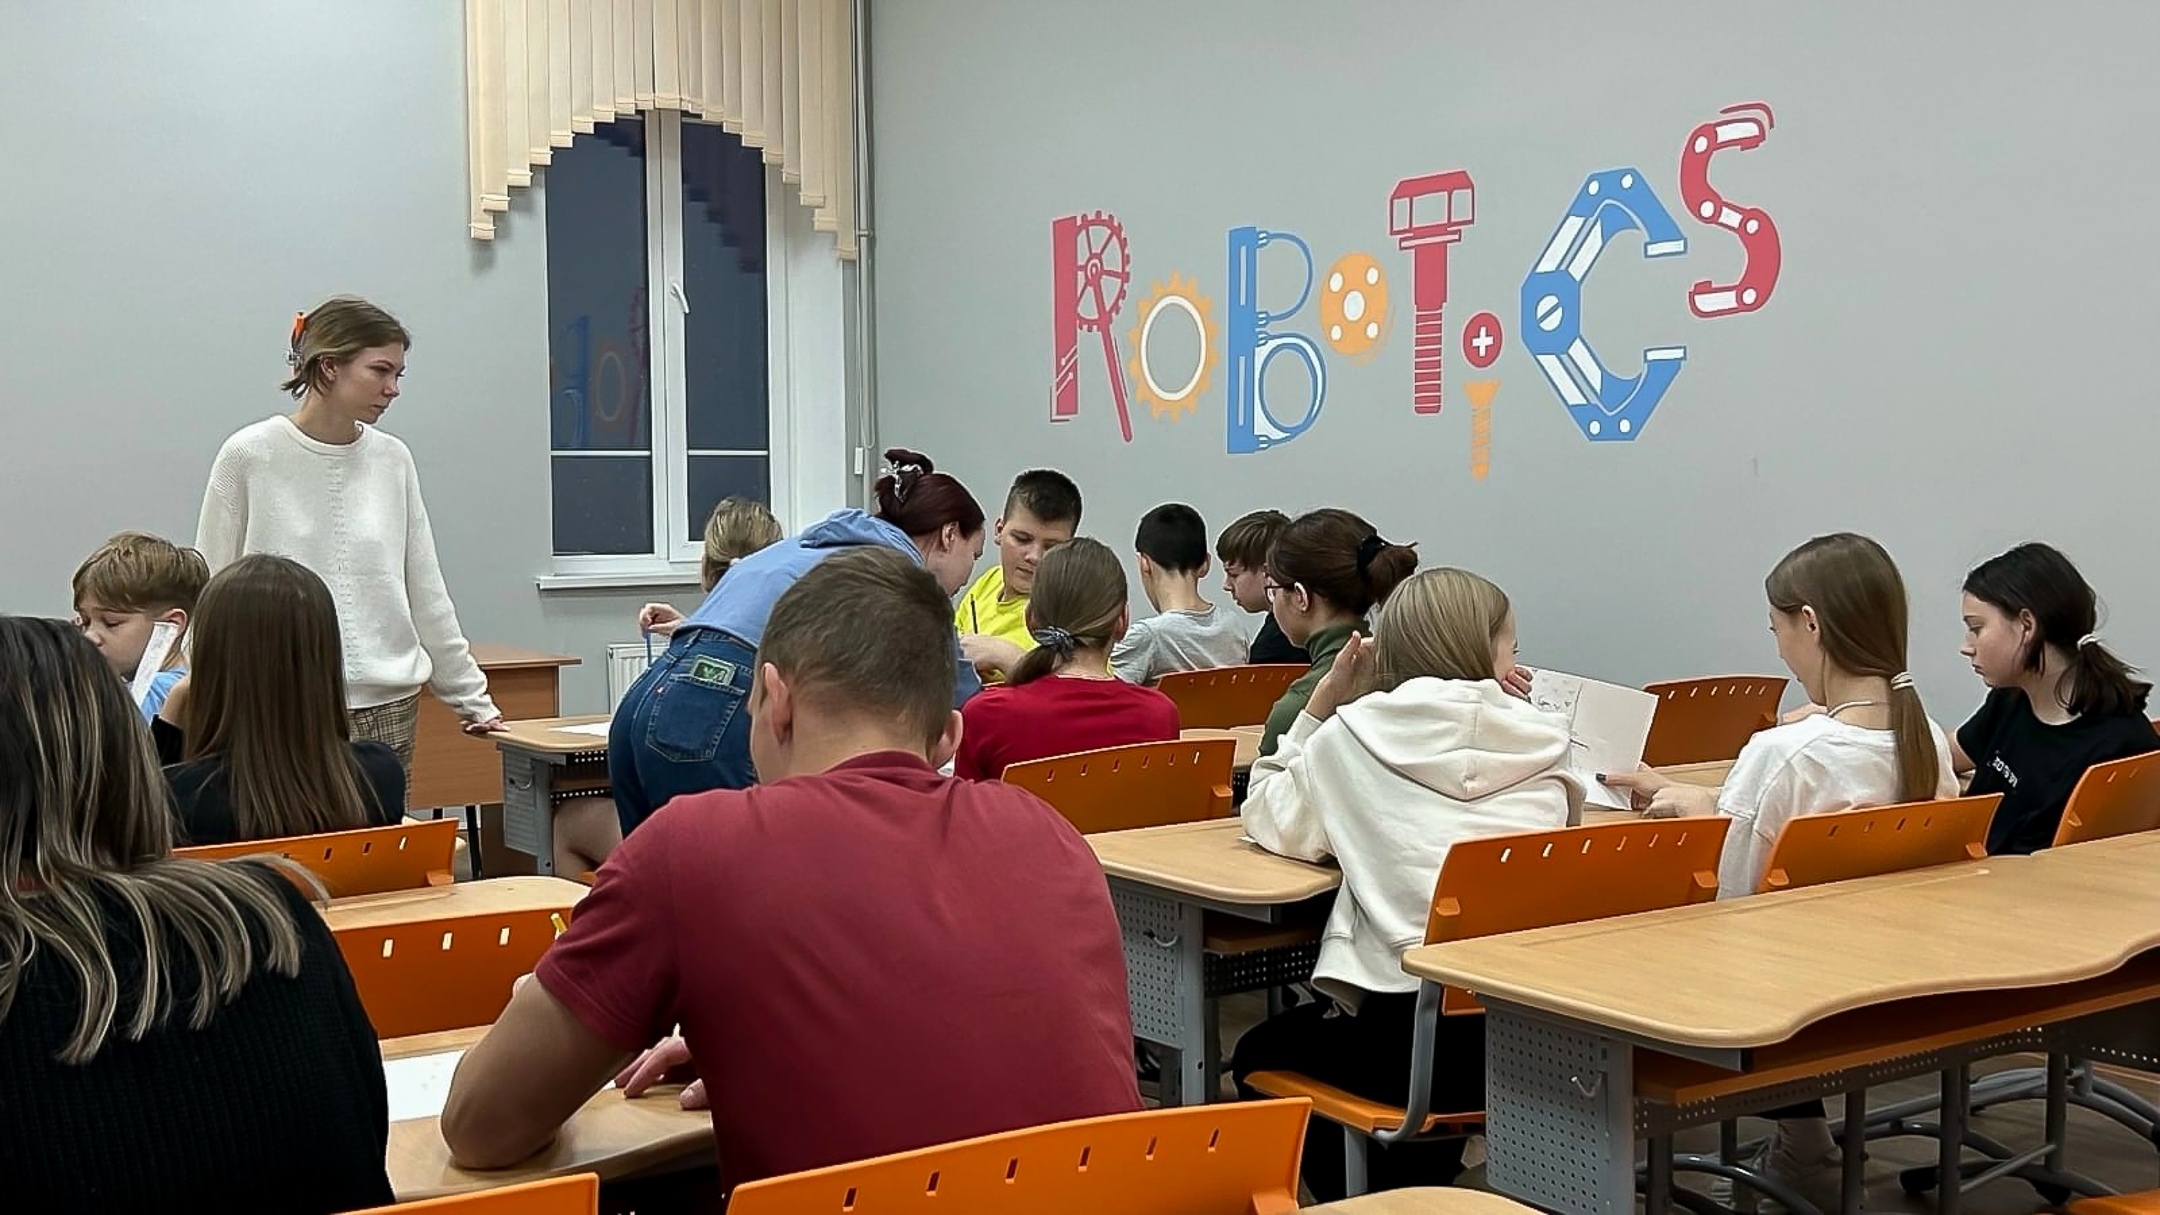 Державинский активно включился в организацию досуга школьников из Белгородской области фото анонса